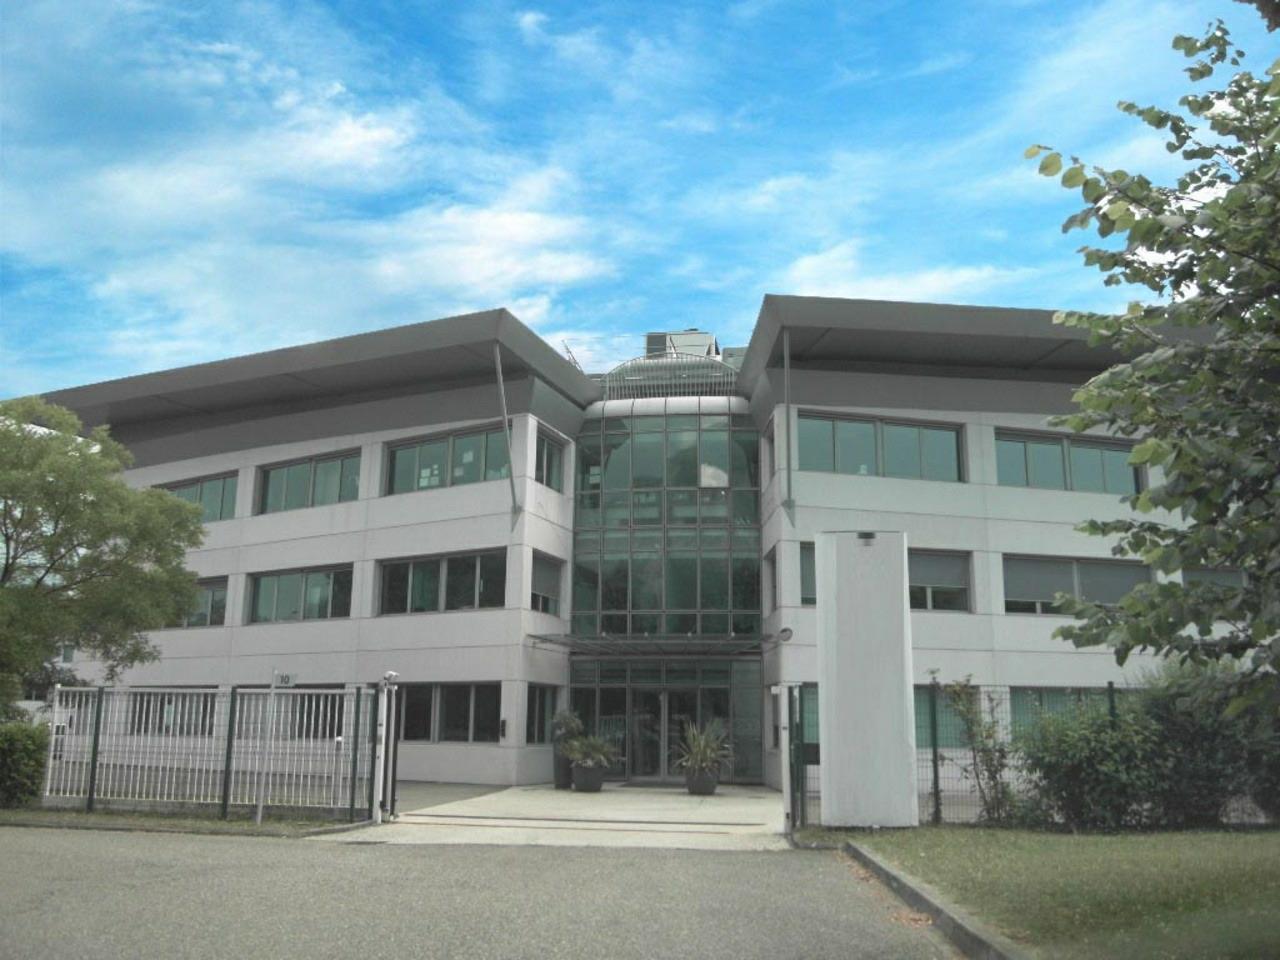 Location bureau Montbonnot-Saint-Martin 443m²